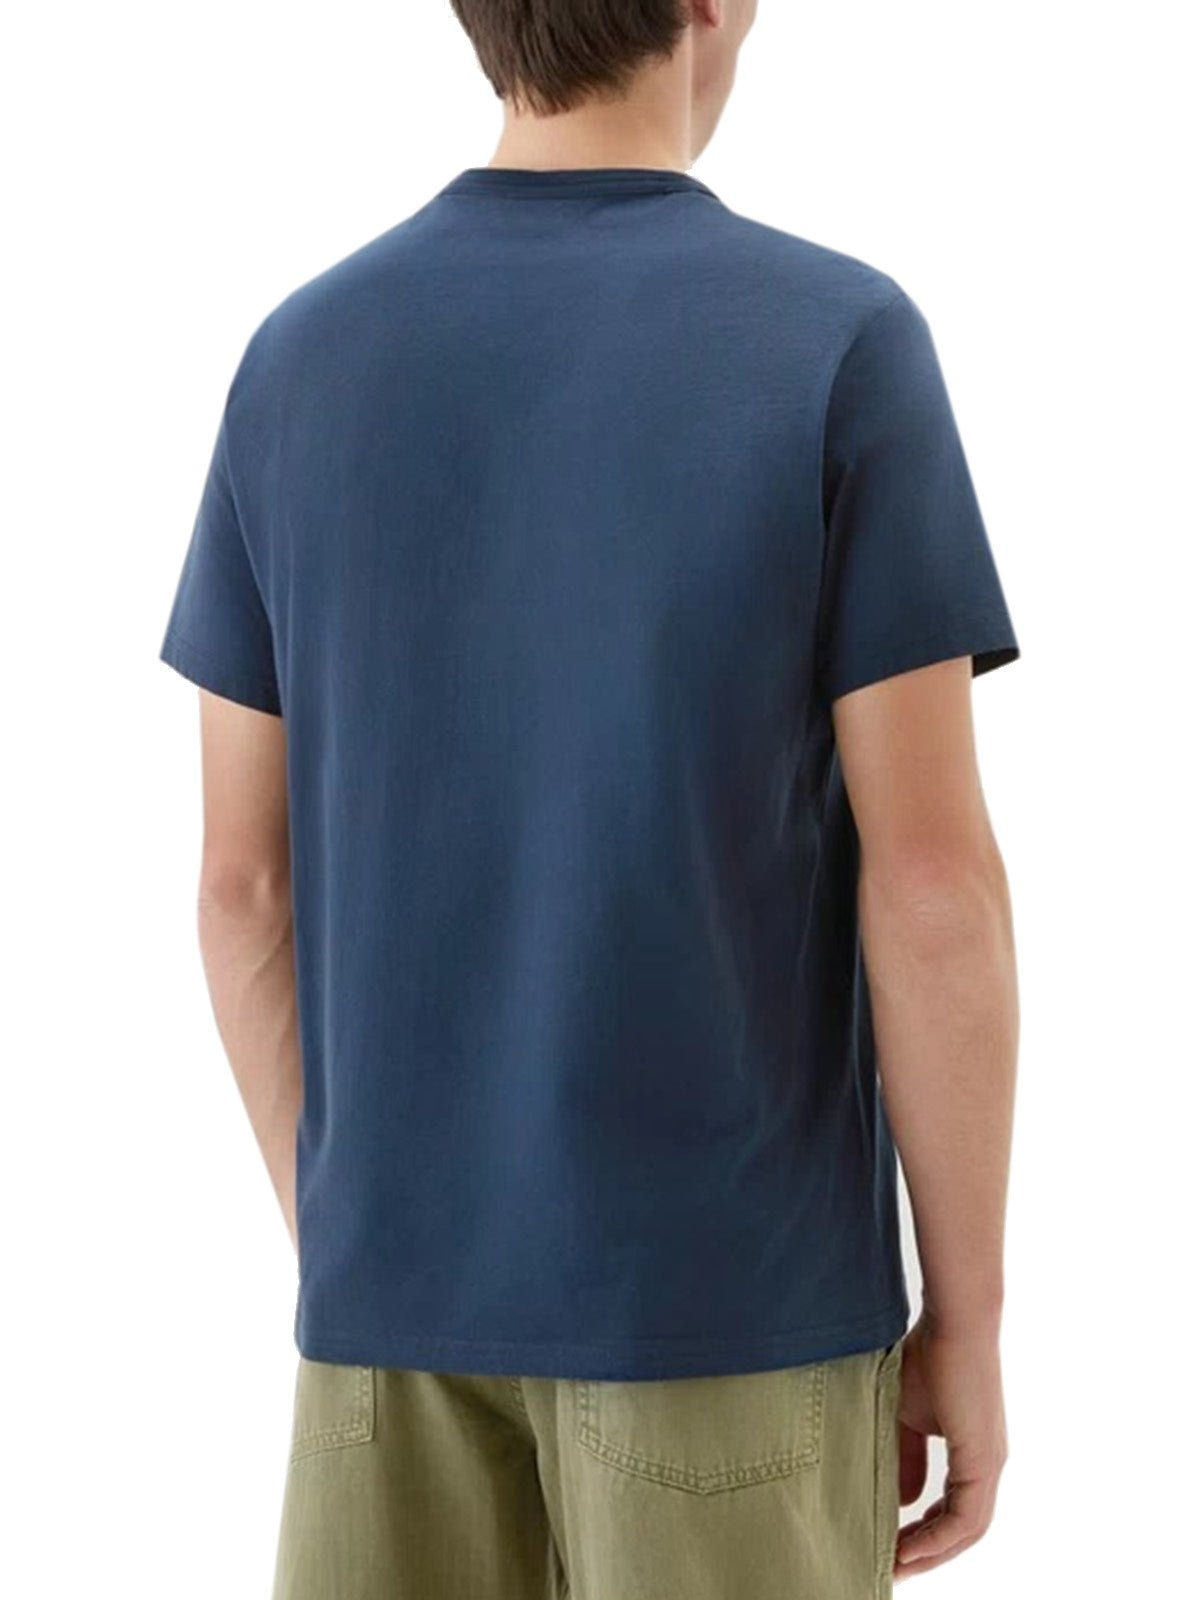 T-shirt Uomo Woolrich - T-Shirt Sheep In Puro Cotone - Blu